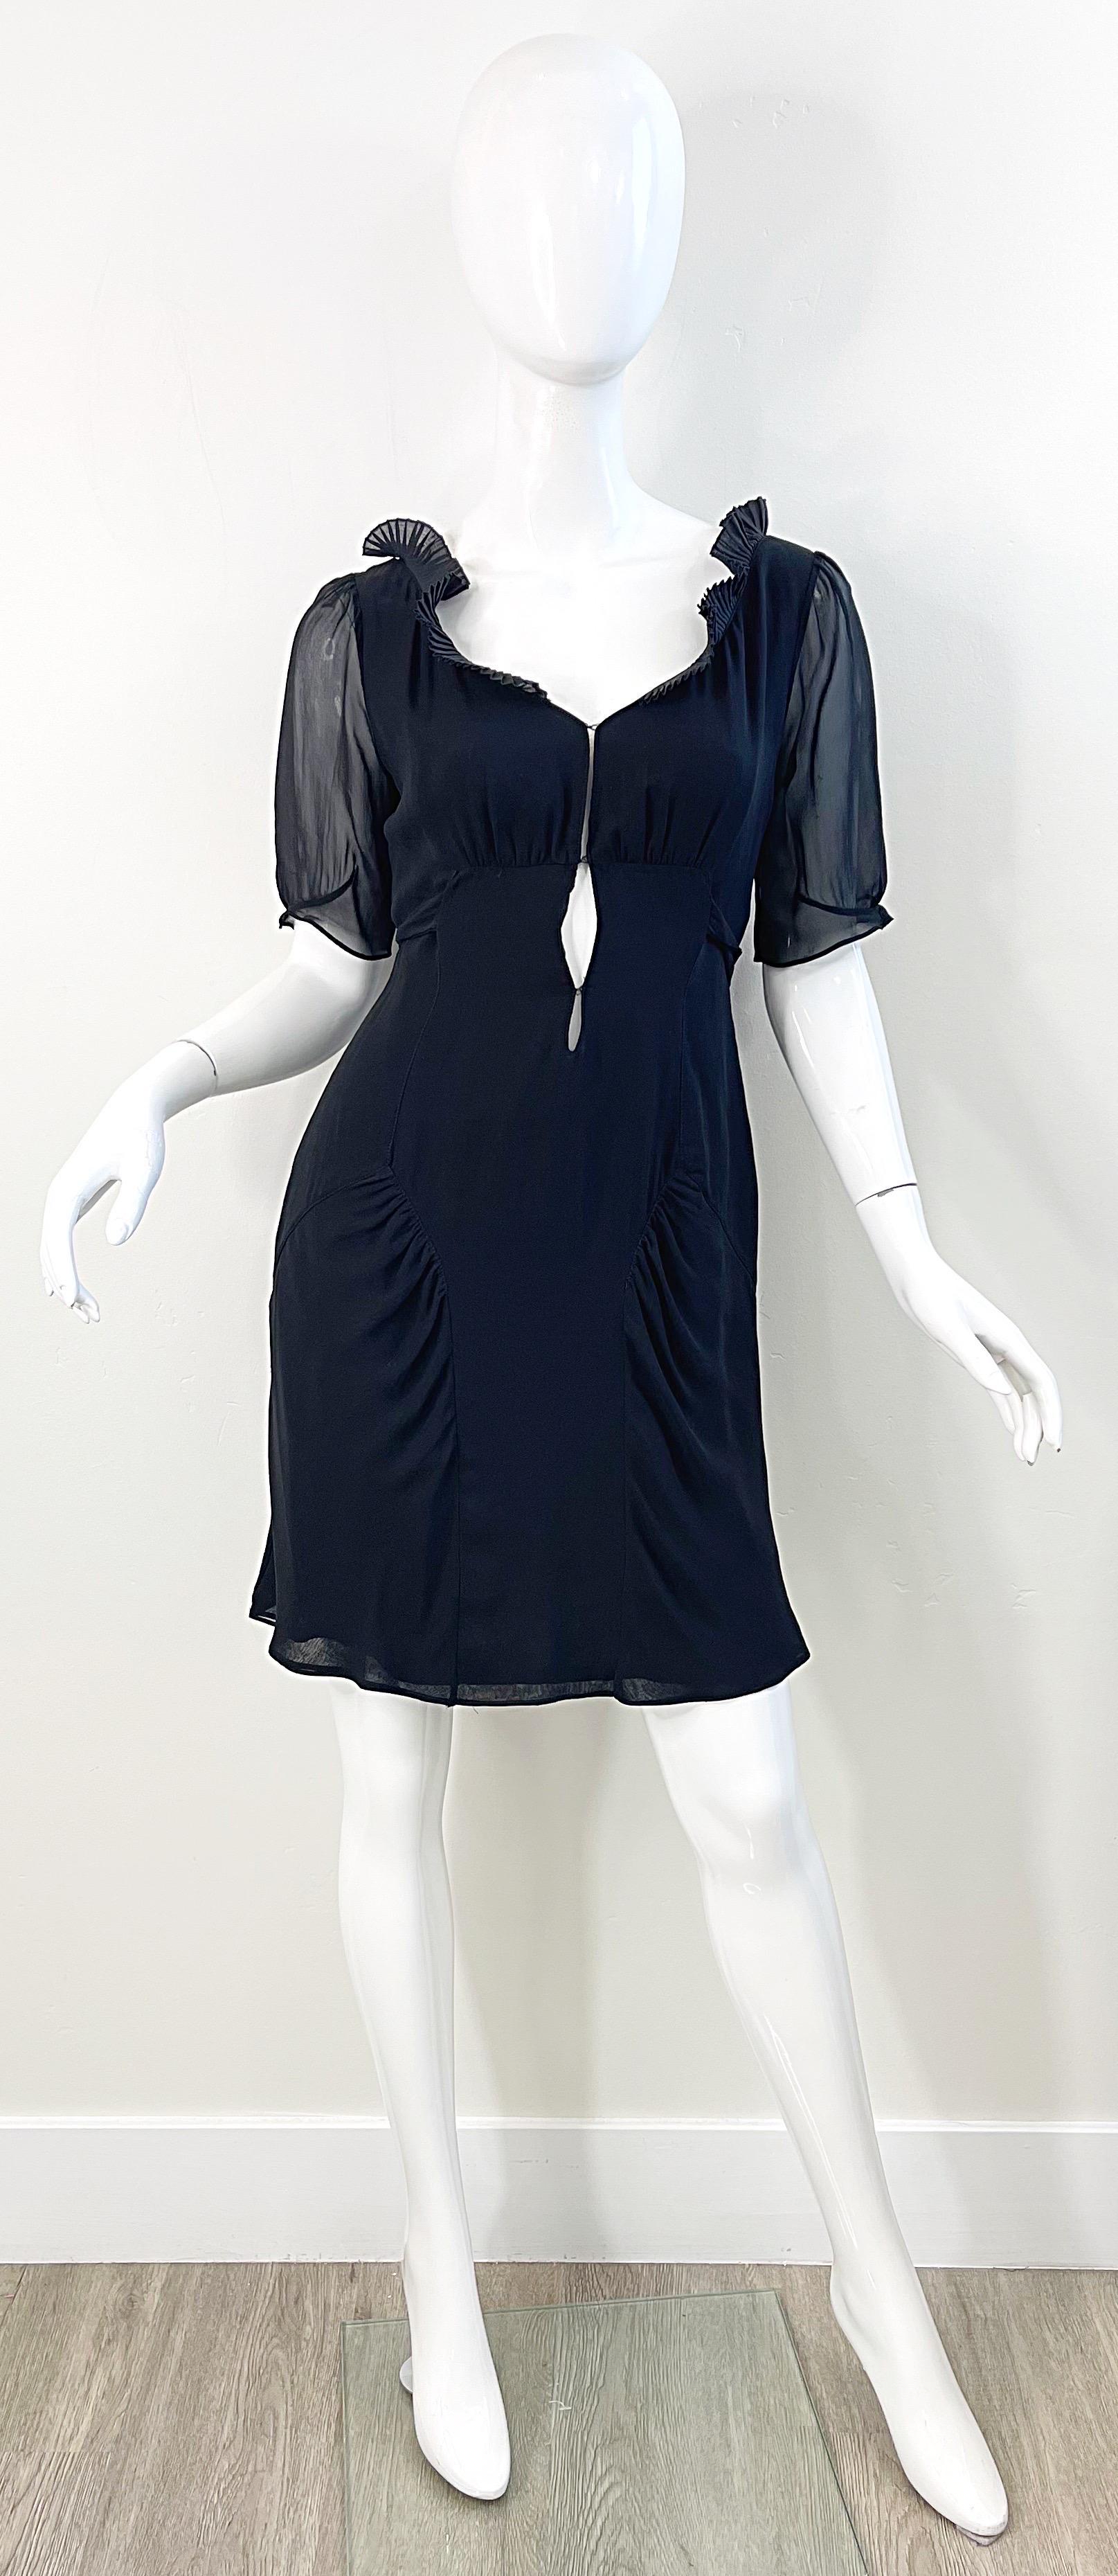 Fin des années 90 COSTUME NATIONAL robe babydoll en mousseline de soie noire à manches courtes ! Comprend plusieurs couches de douce mousseline de soie. Attaches dans le dos. Deux fermetures à crochets et à oeillets au niveau du buste. Des volants